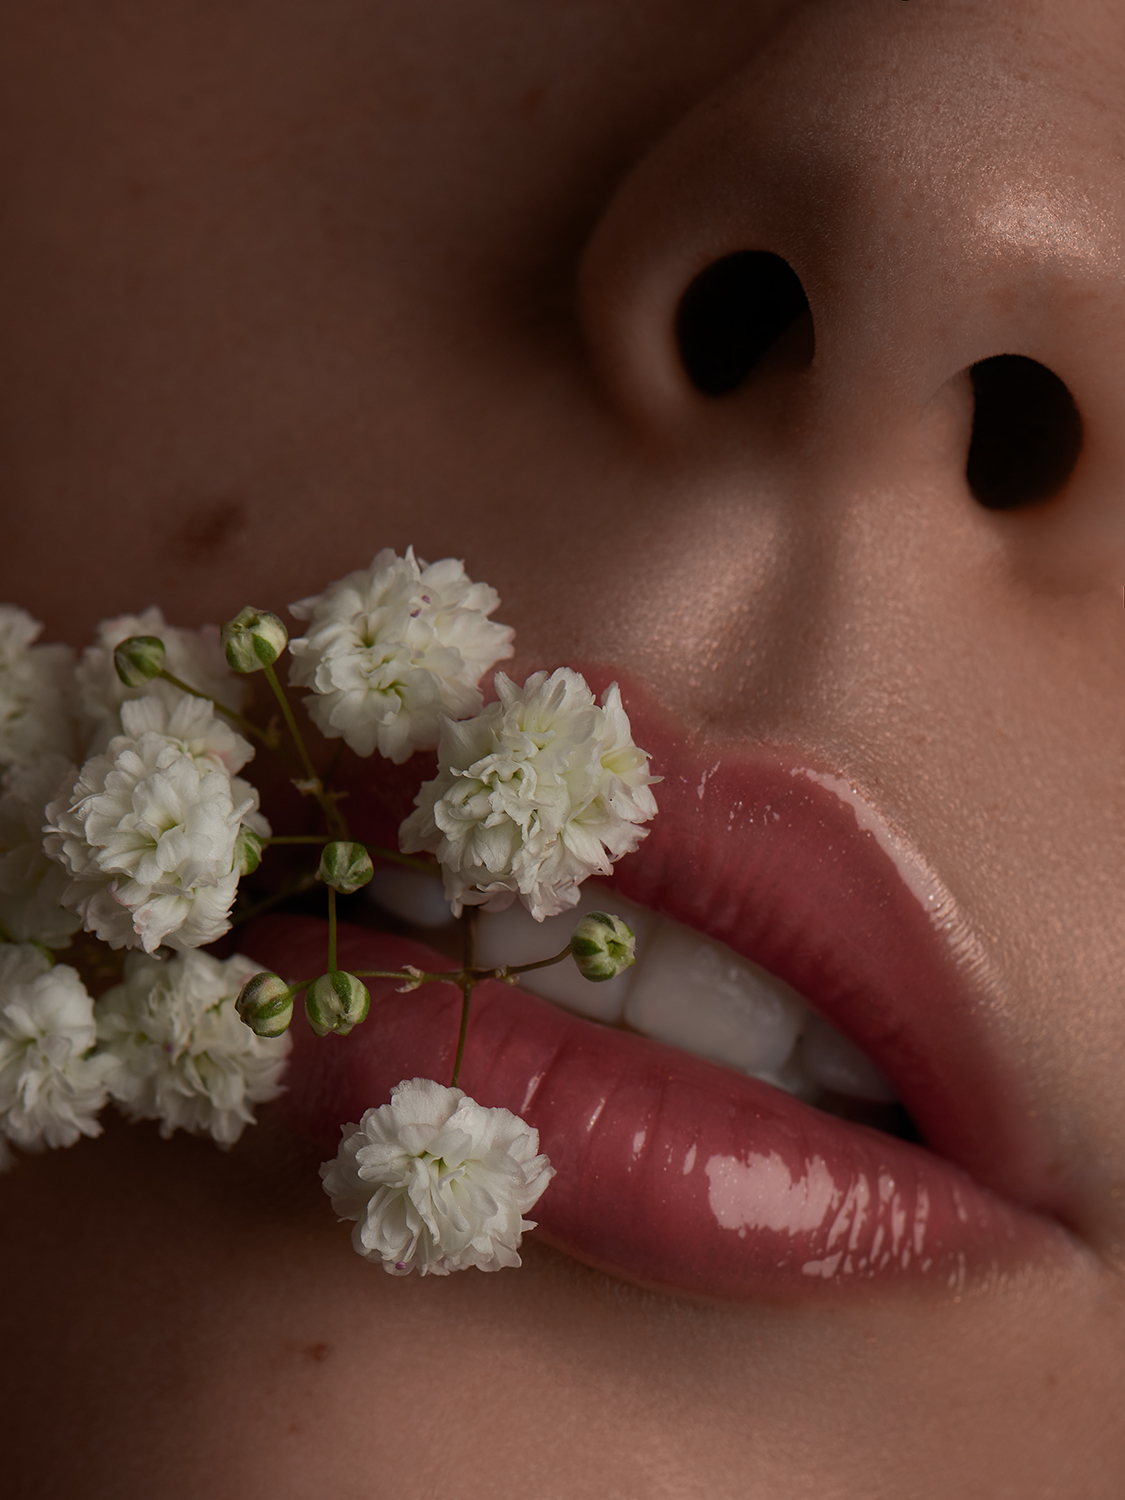 Beauty Aufnahme Lippen mit Blume by Eveliene Klink